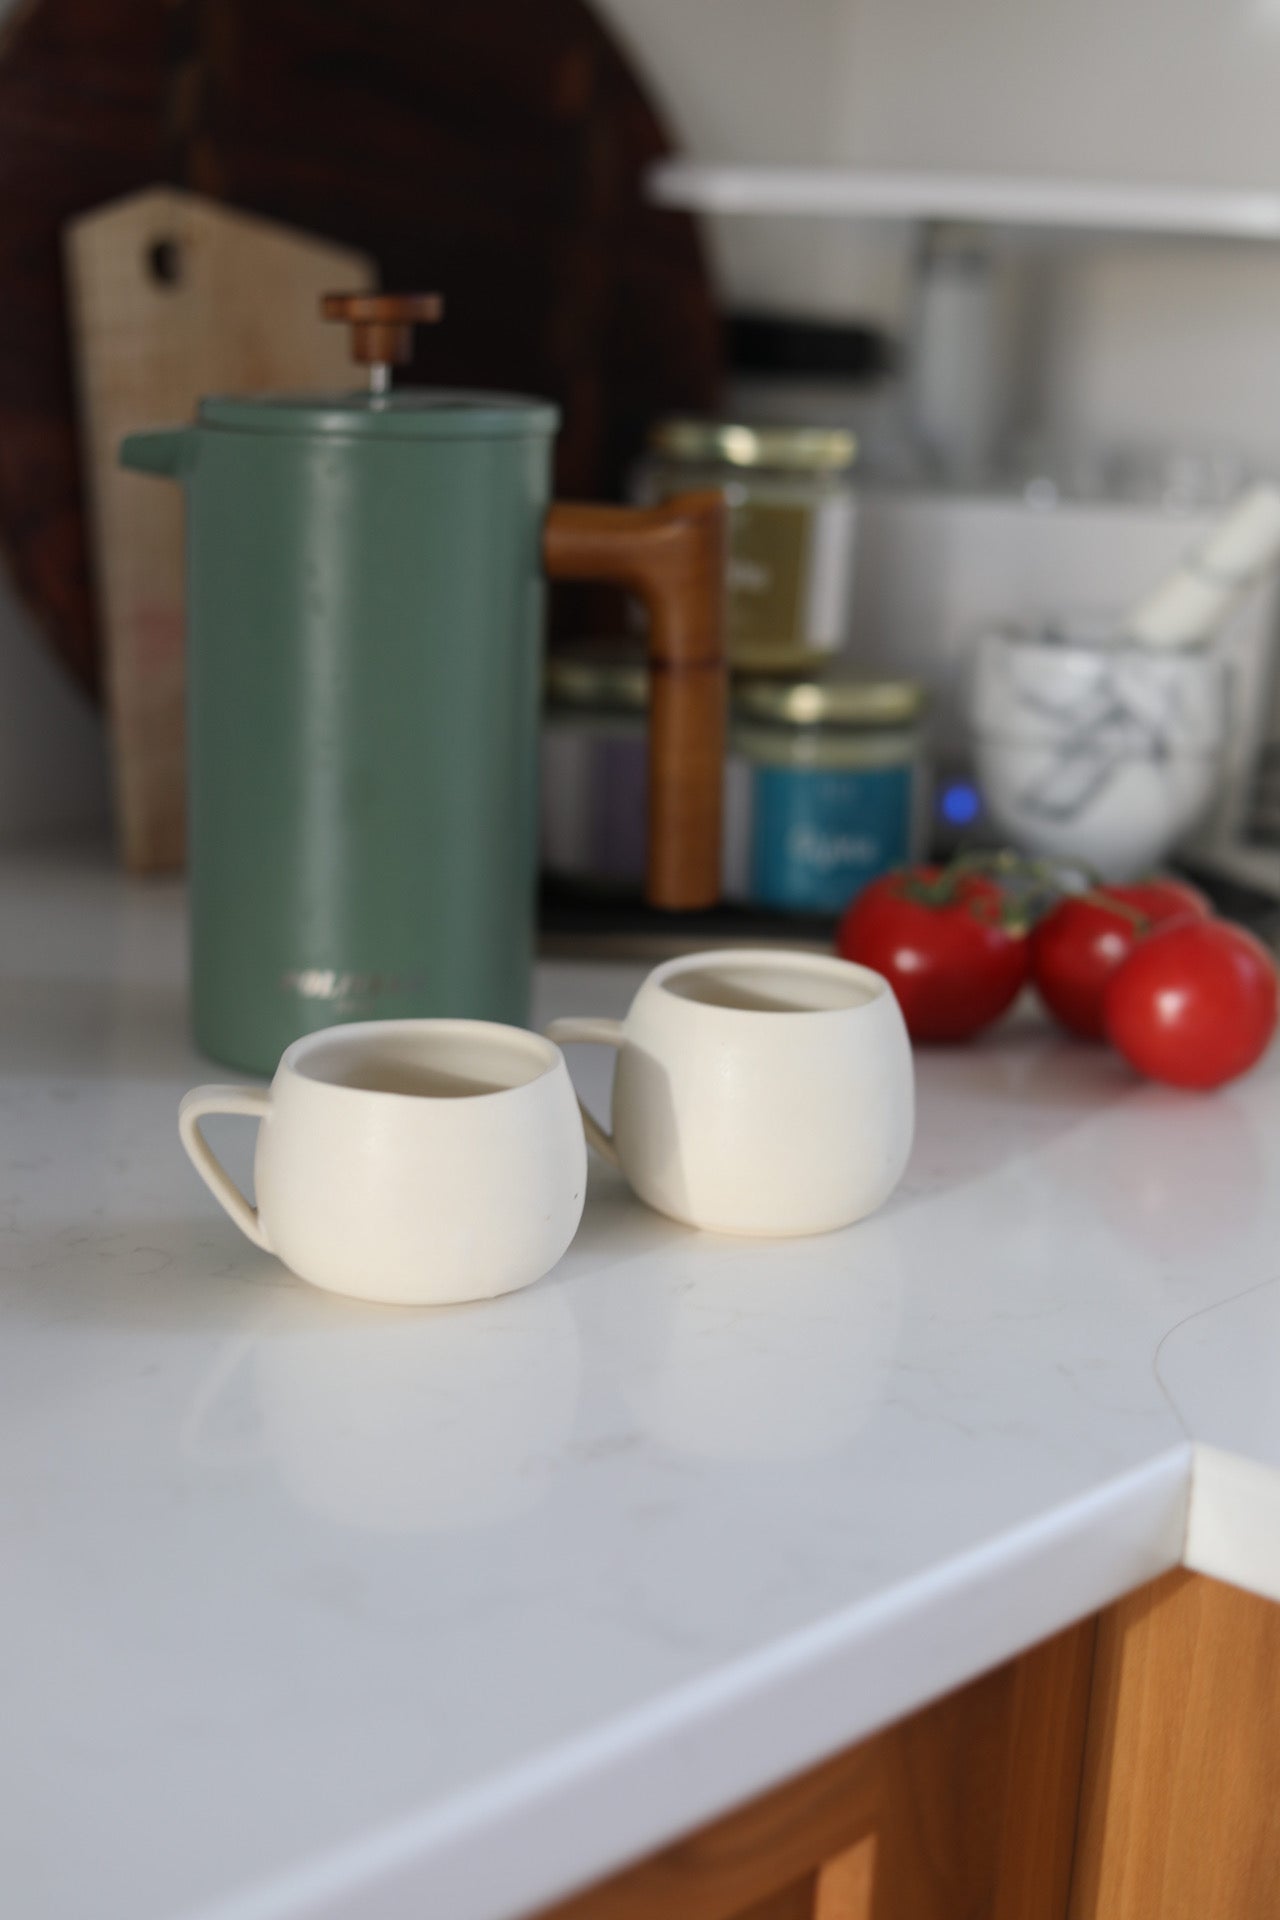 Pepo Ceramics Belly Espresso Mug- soft matte white